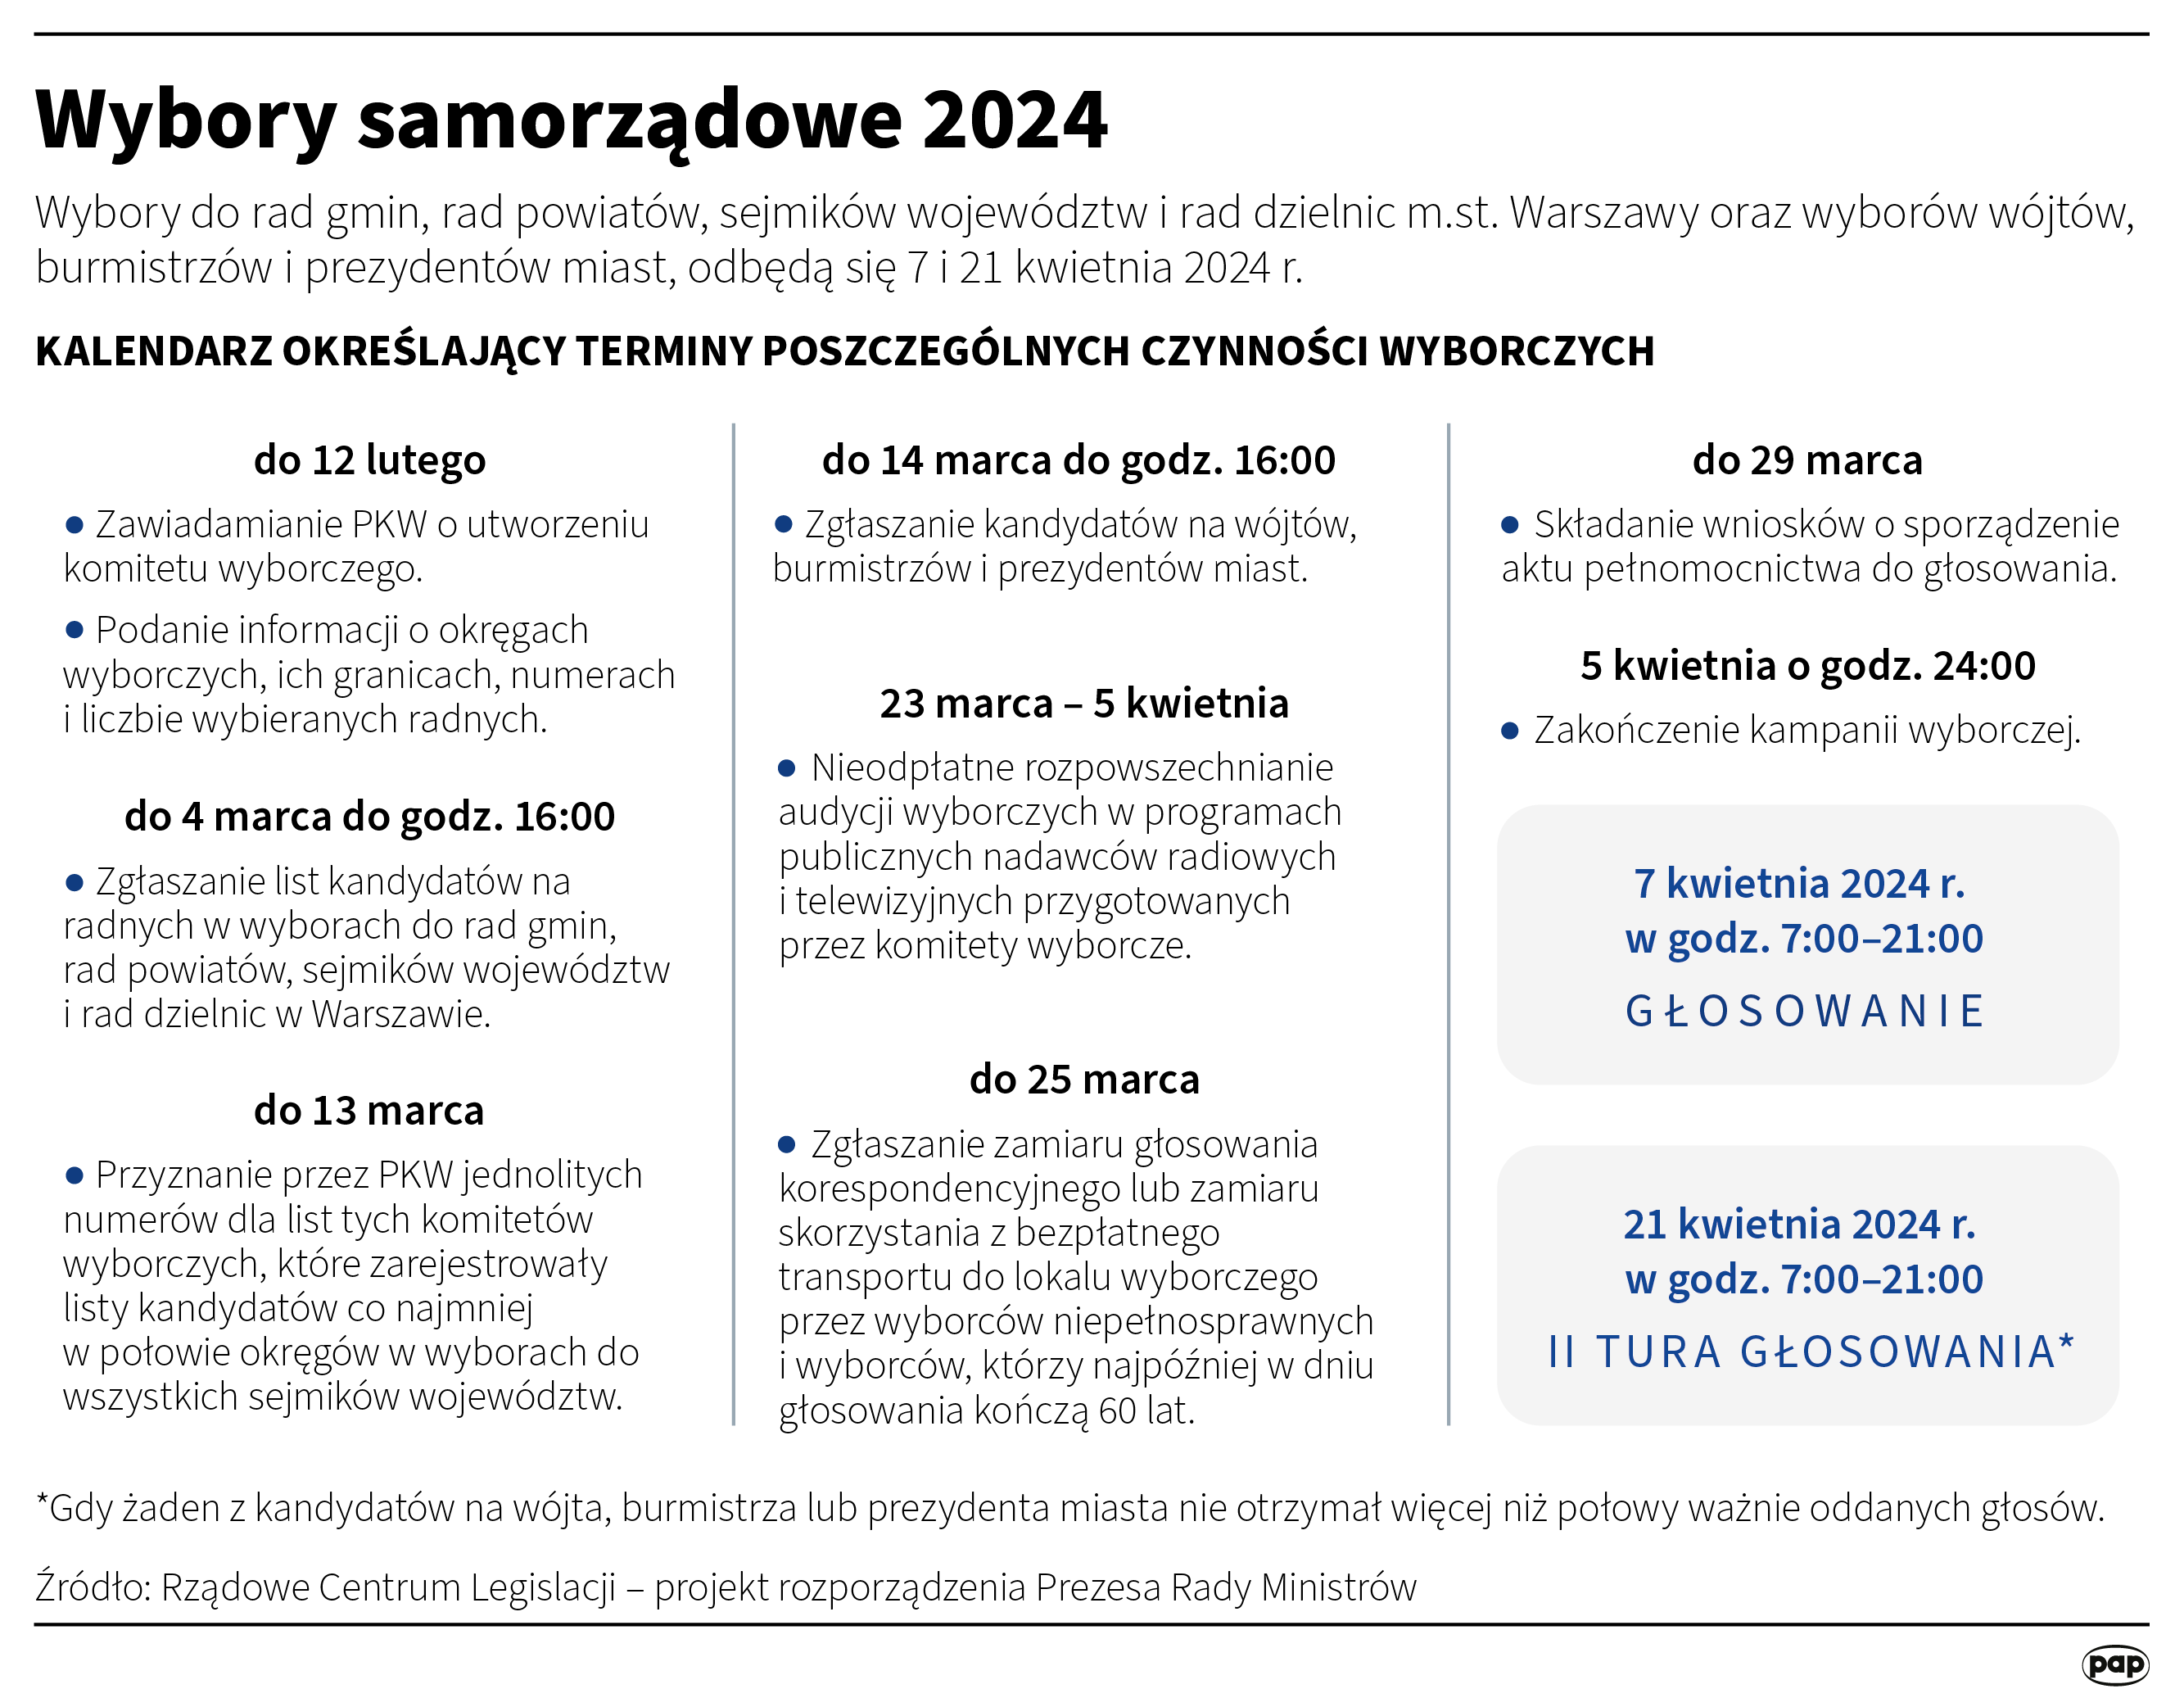 Kalendarz wyborczy 2024, infografika PAP